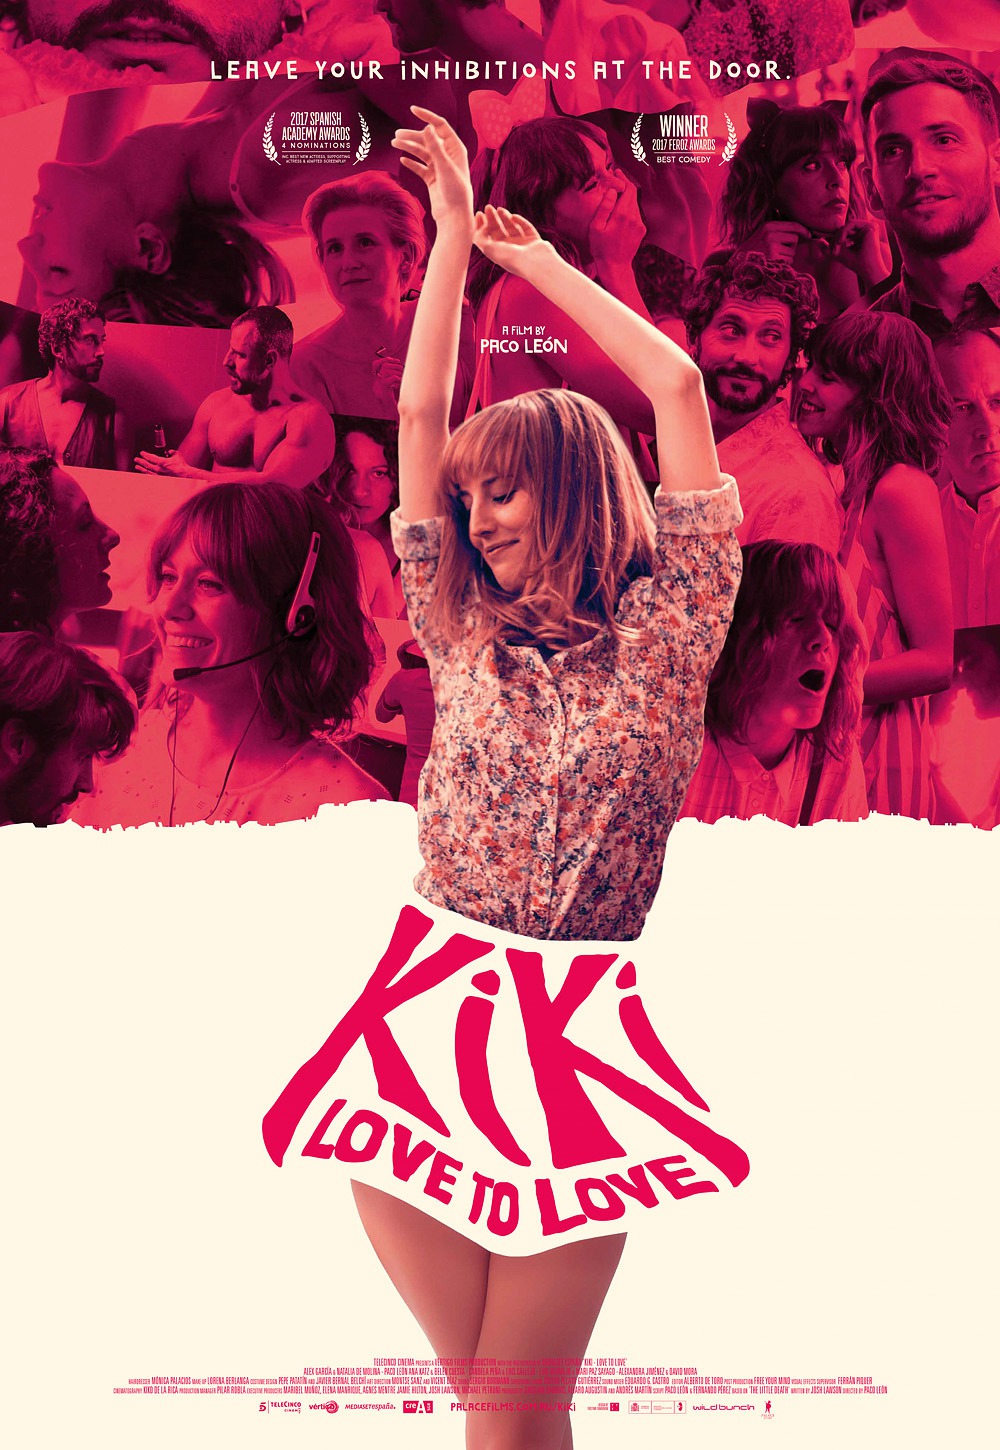 Extra Large Movie Poster Image for Kiki, el amor se hace (#3 of 3)